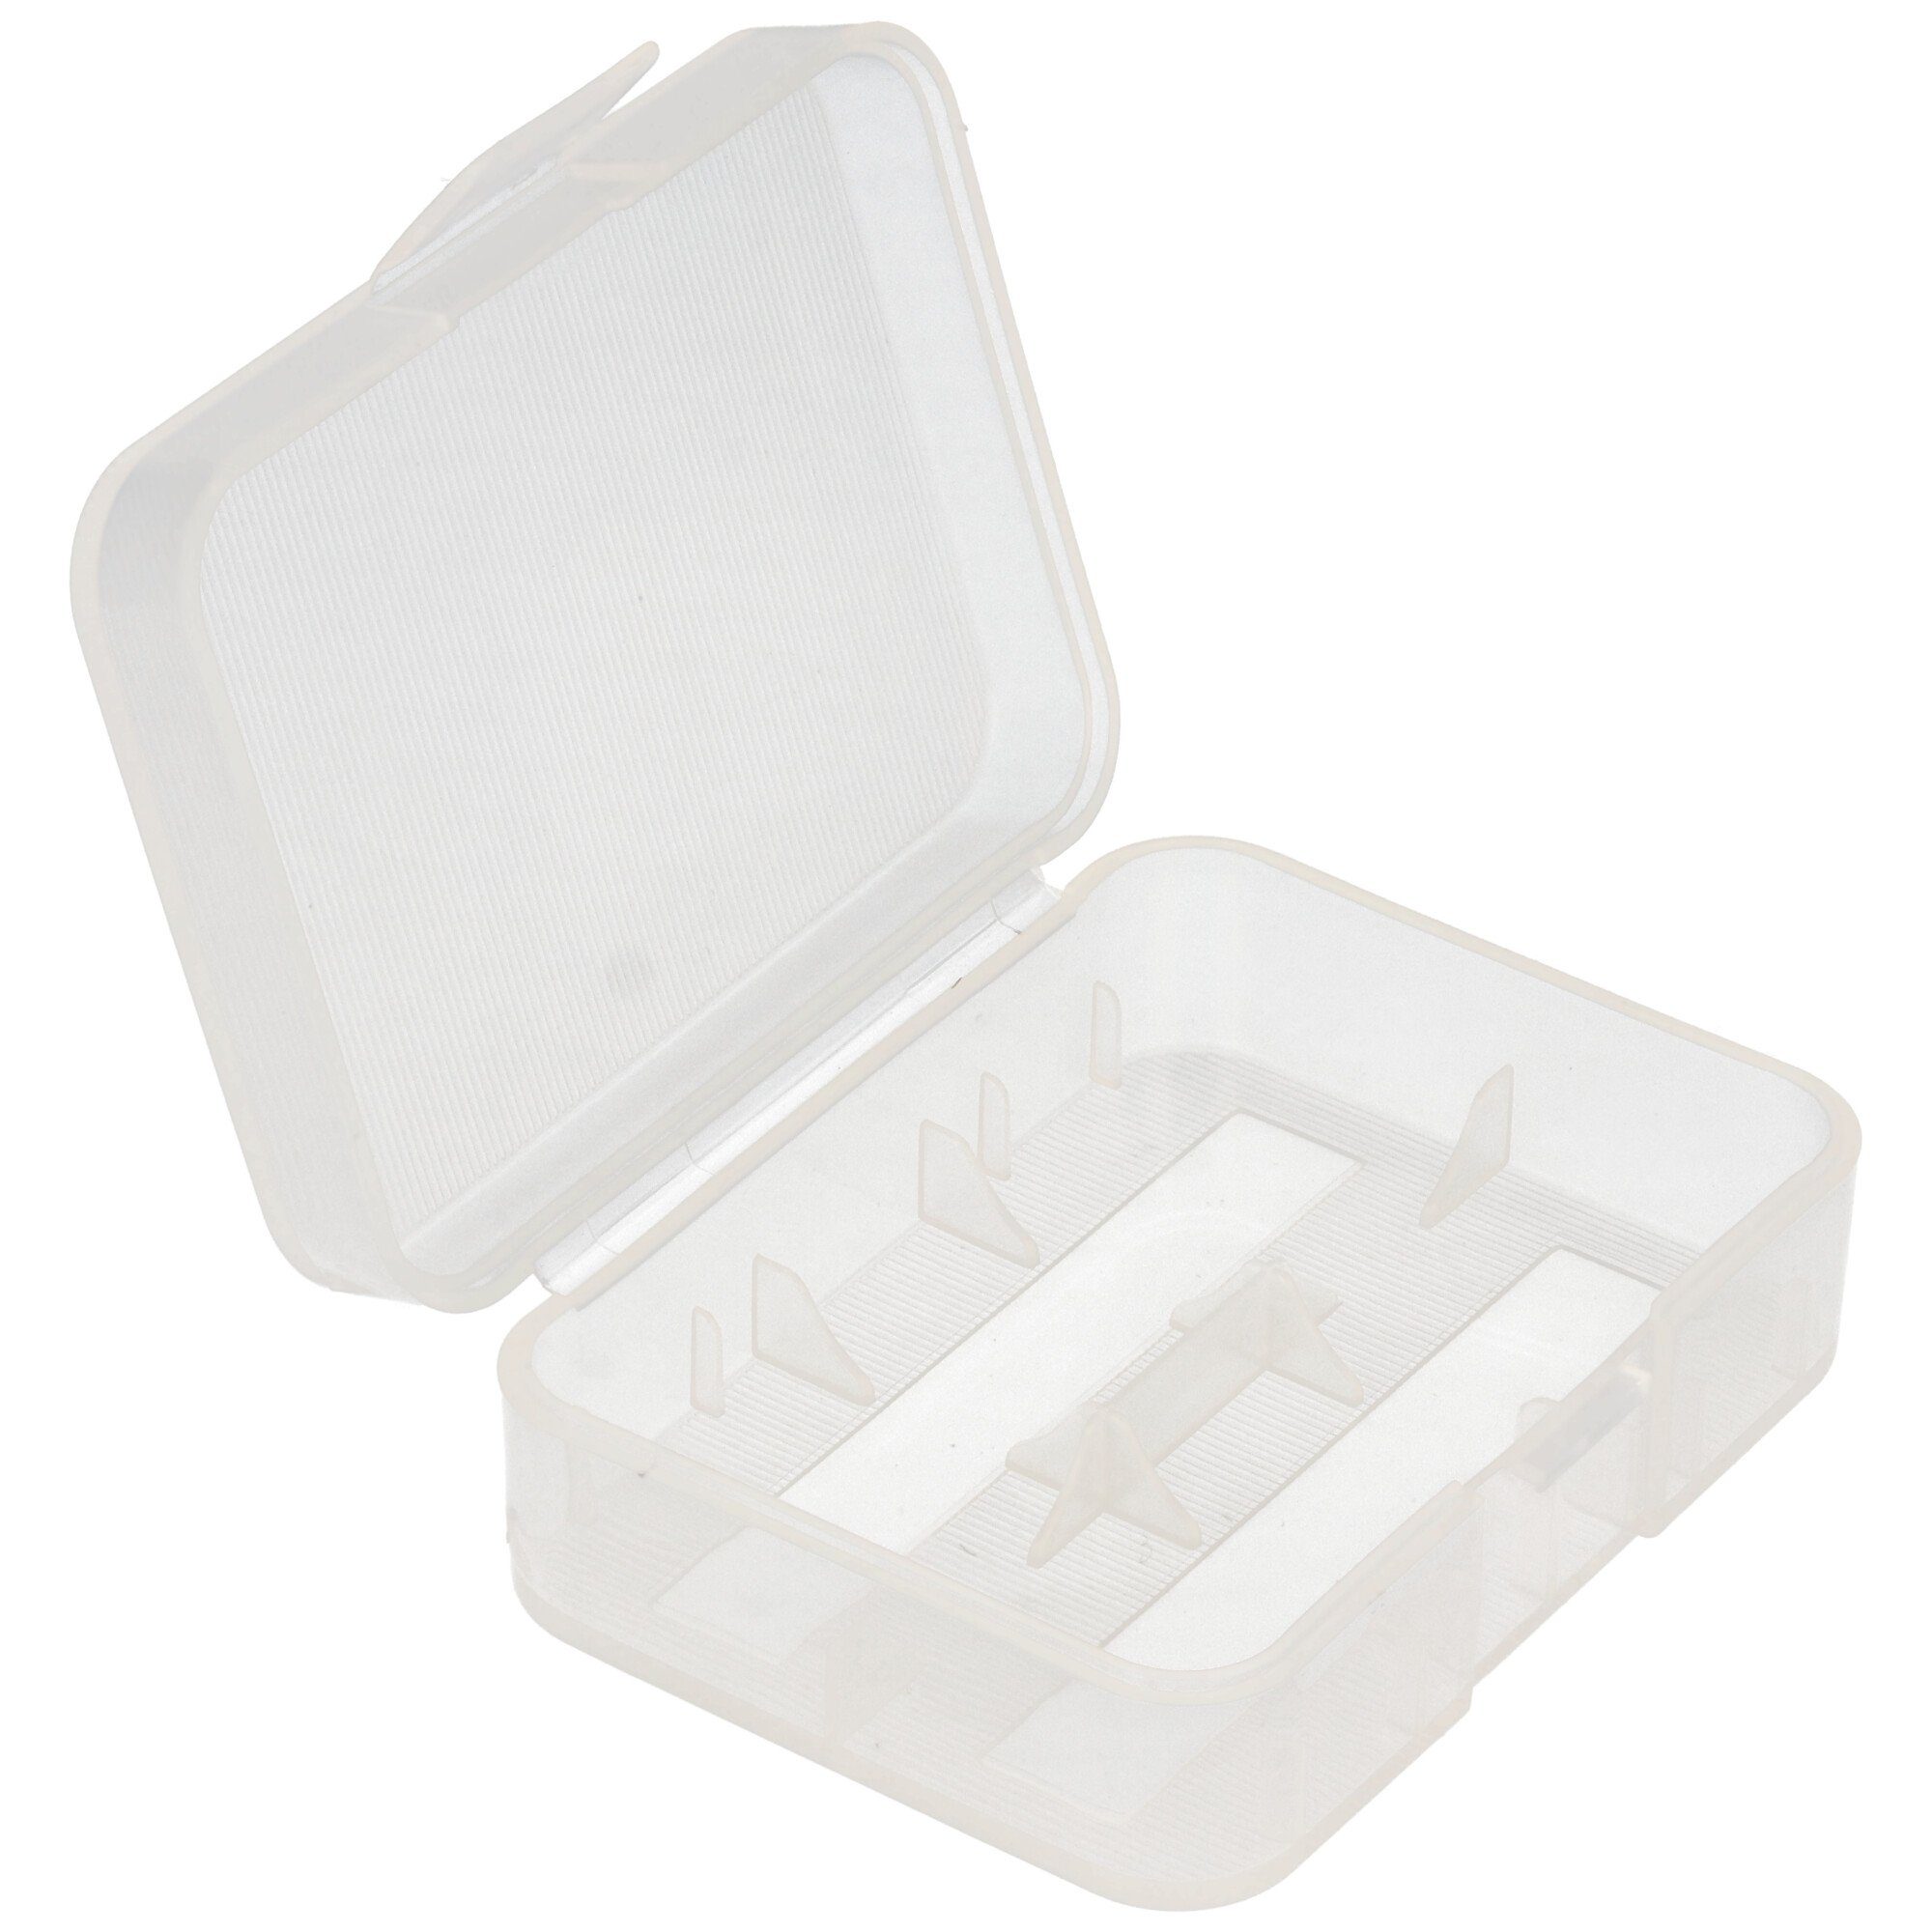 AccuCell Plastikbox 2x 18500 für 3x 16340 Batterie transparent oder AccuSafe